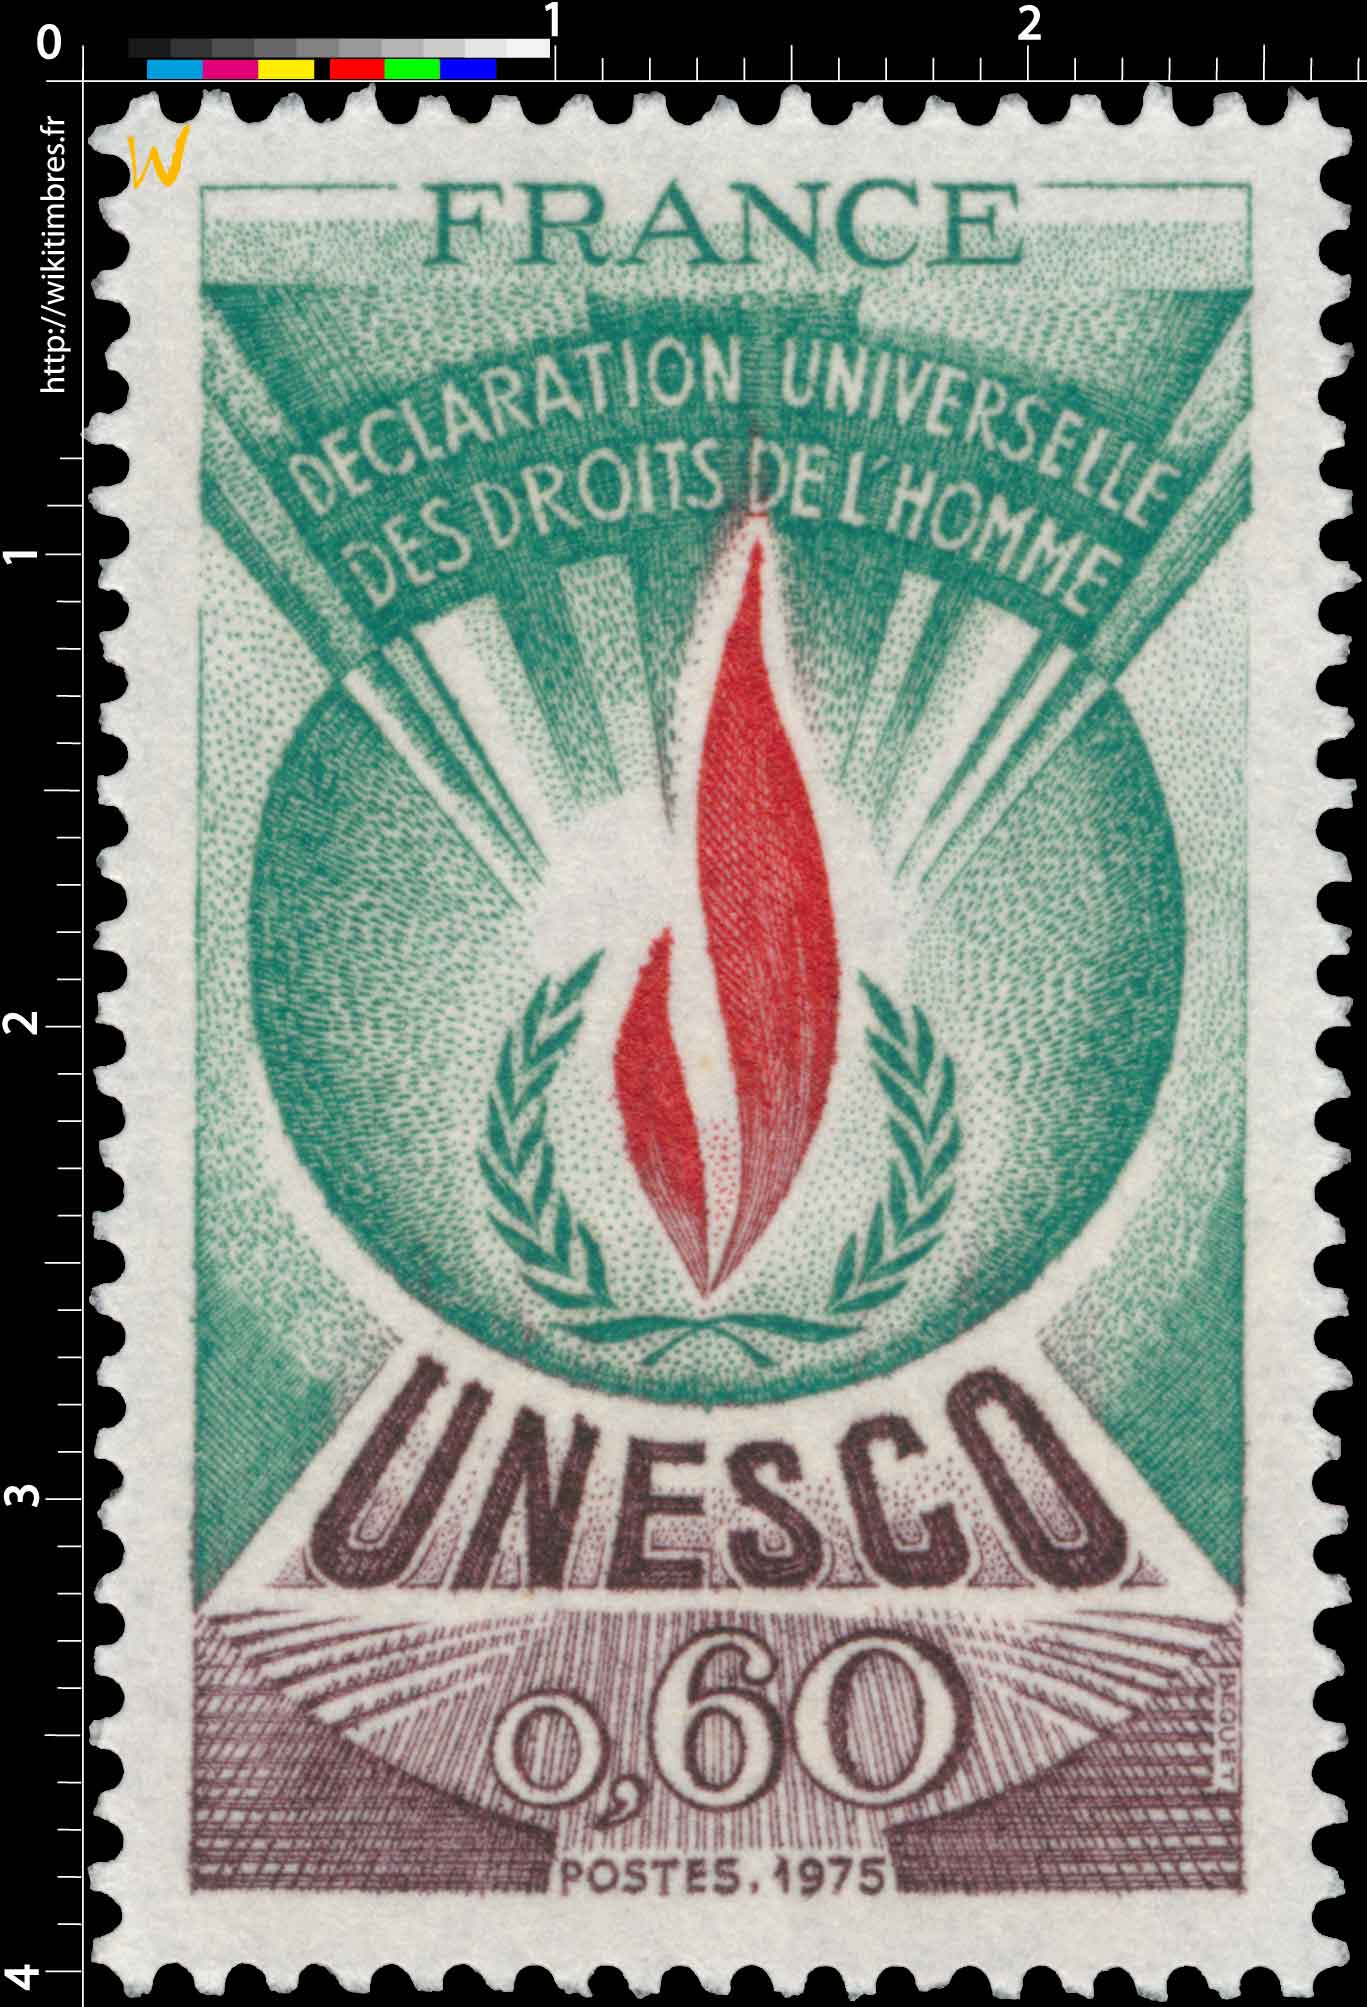 1975 UNESCO DÉCLARATION UNIVERSELLE DES DROITS DE L'HOMME